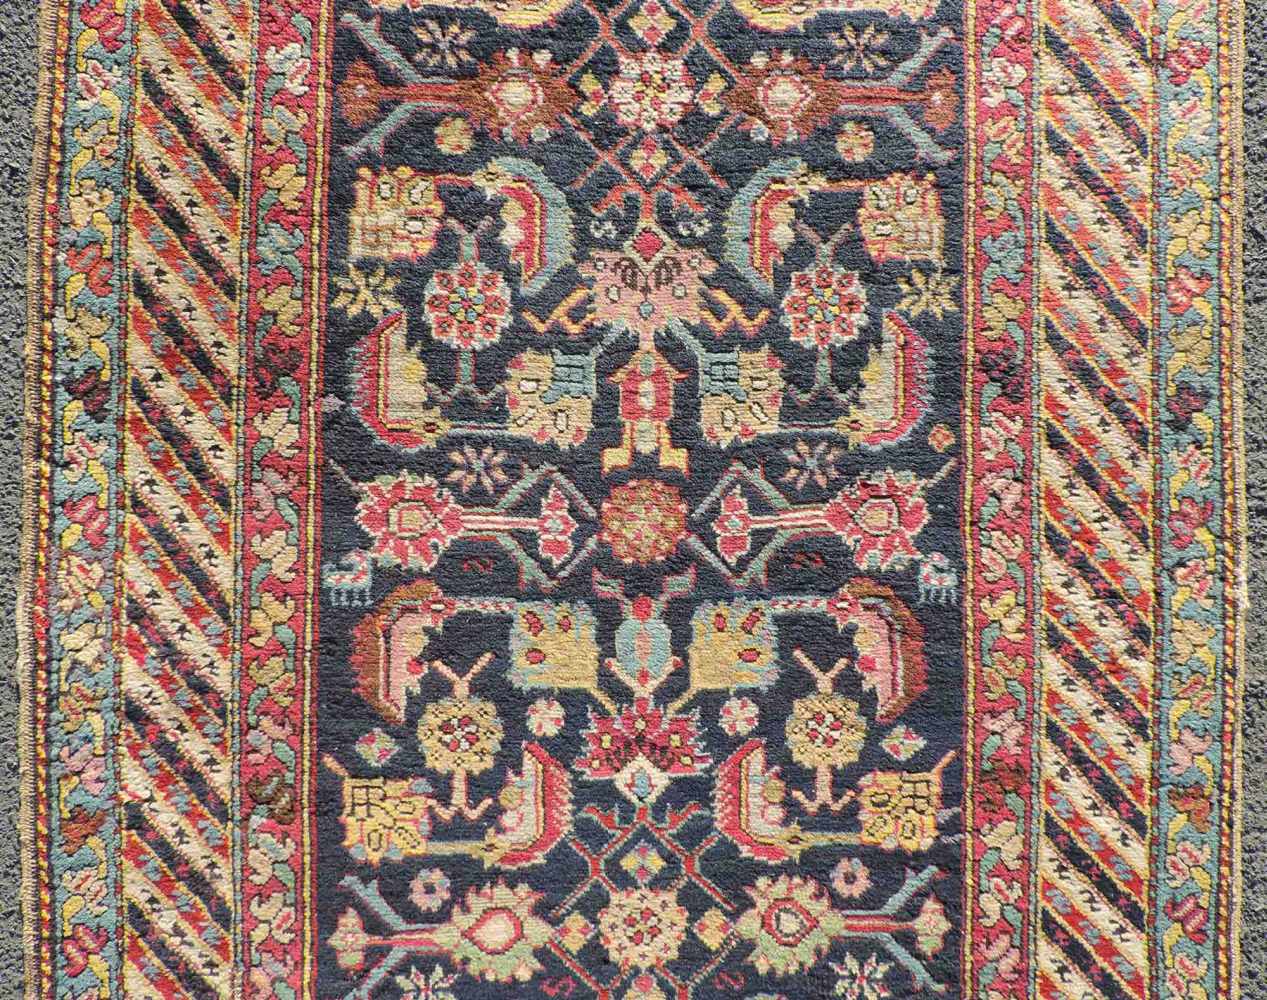 Schuscha Karabagh Galerie Teppich. Kaukasus. Antik, um 1880. 503 cm x 96 cm. Handgeknüpft. Wolle auf - Image 4 of 7